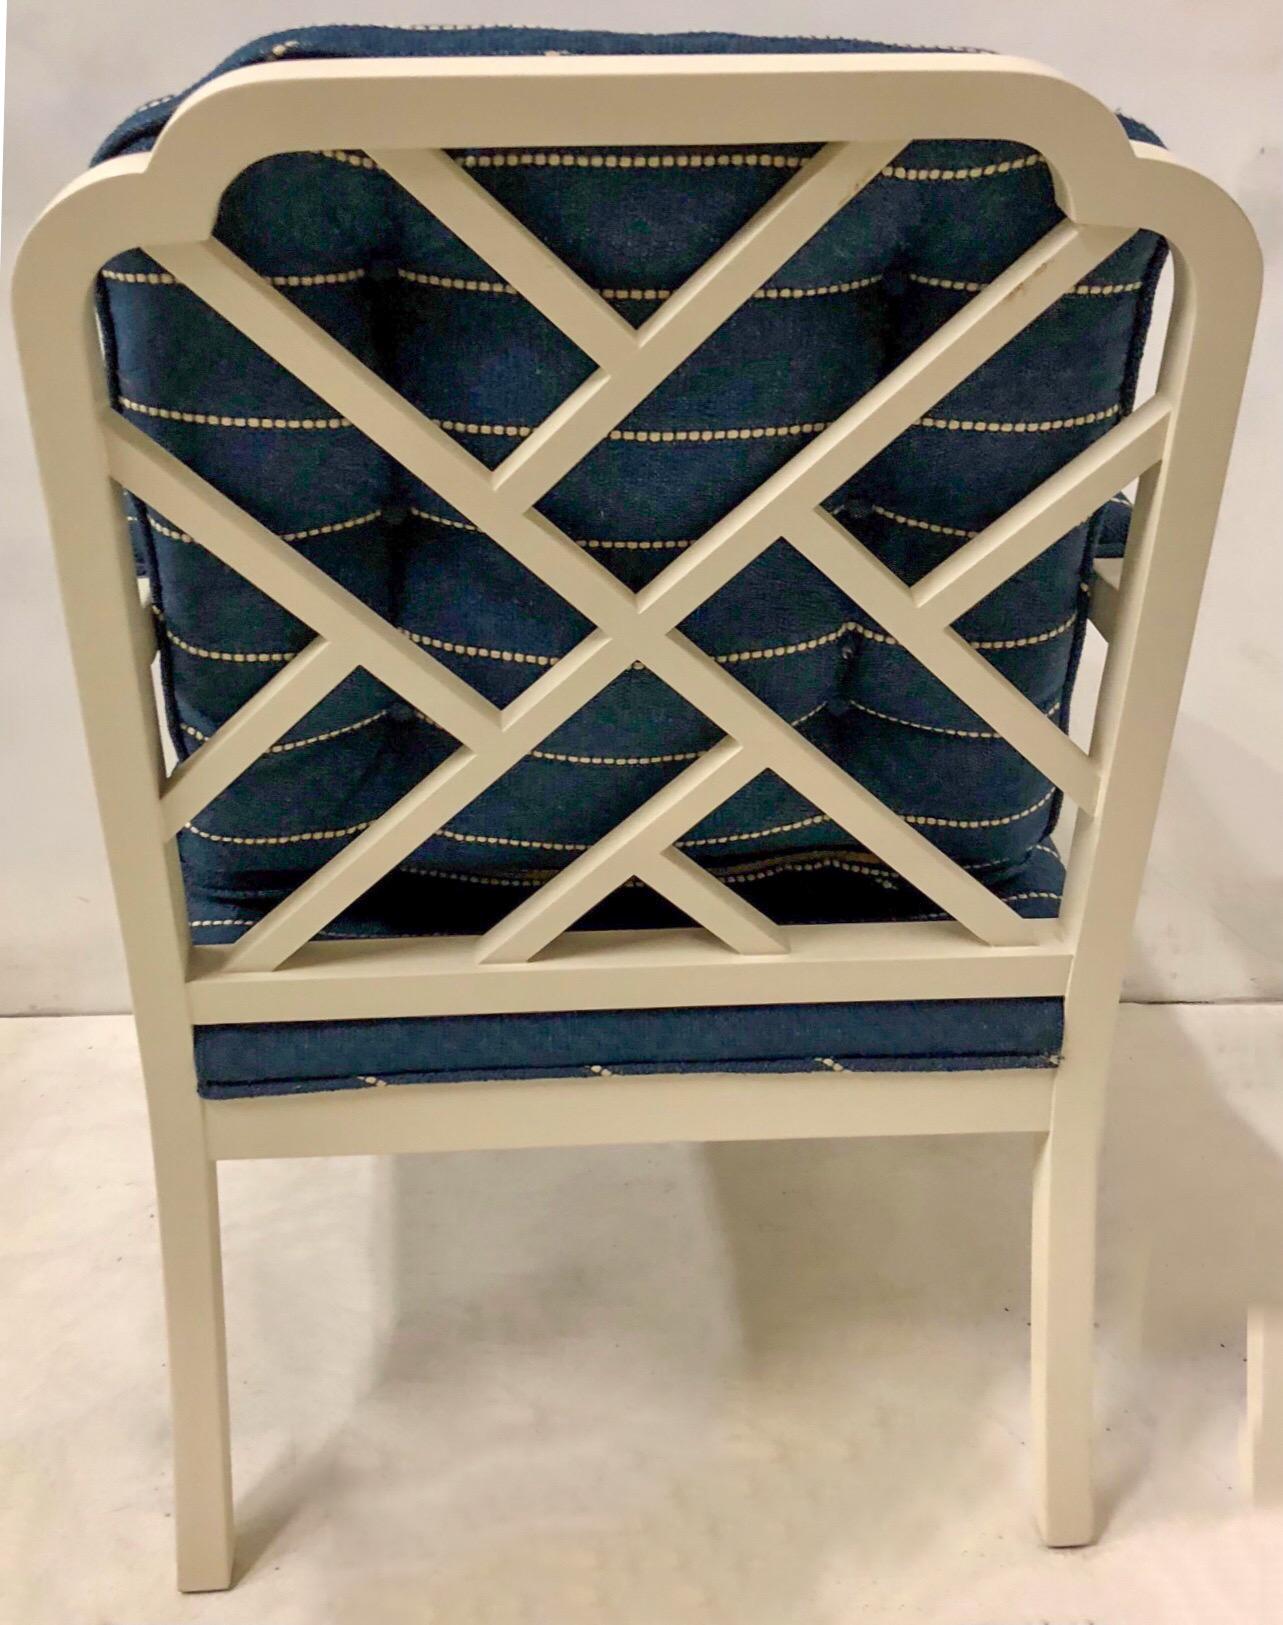 Diese Erwin Lambeth-Stühle stammen aus den 1970er Jahren. Sie sind im chinesischen Chippendale-Stil gehalten und wurden mit einer weißen Satin-Leinen-Lackierung und einer strukturierten Leinen-Polsterung aufgefrischt. Sie sind gekennzeichnet und in